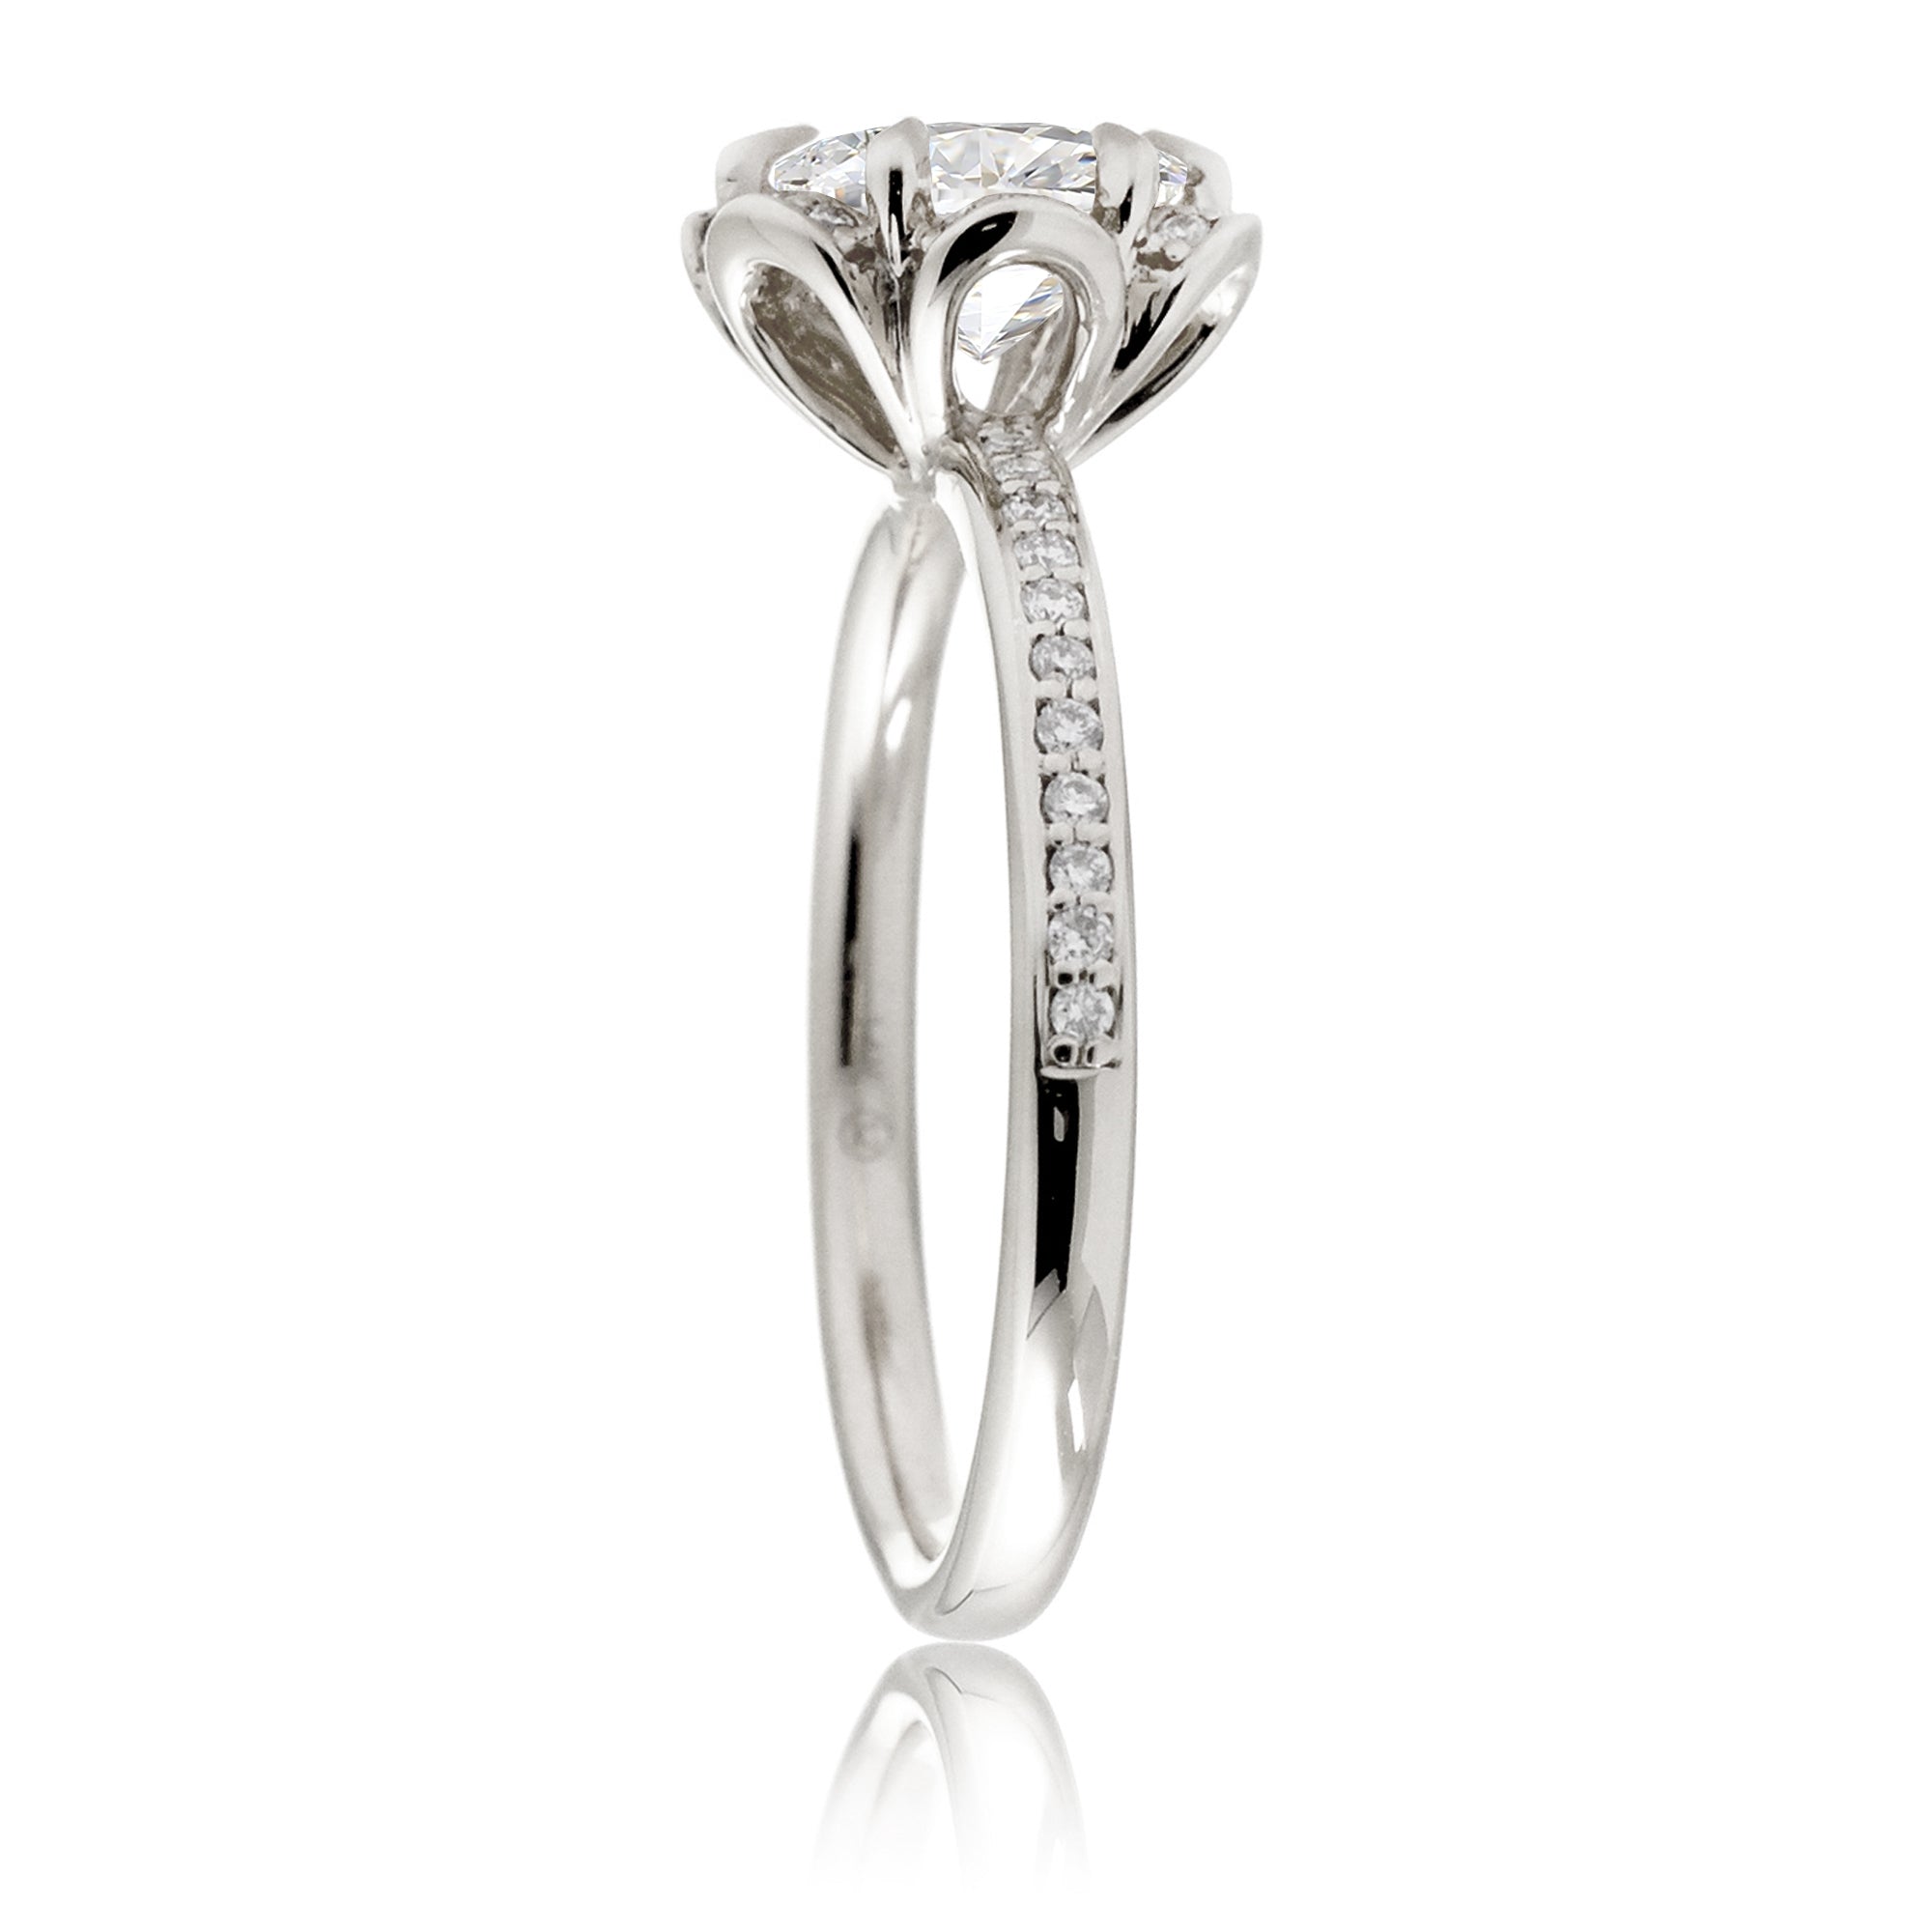 Flower design diamond engagement ring white gold